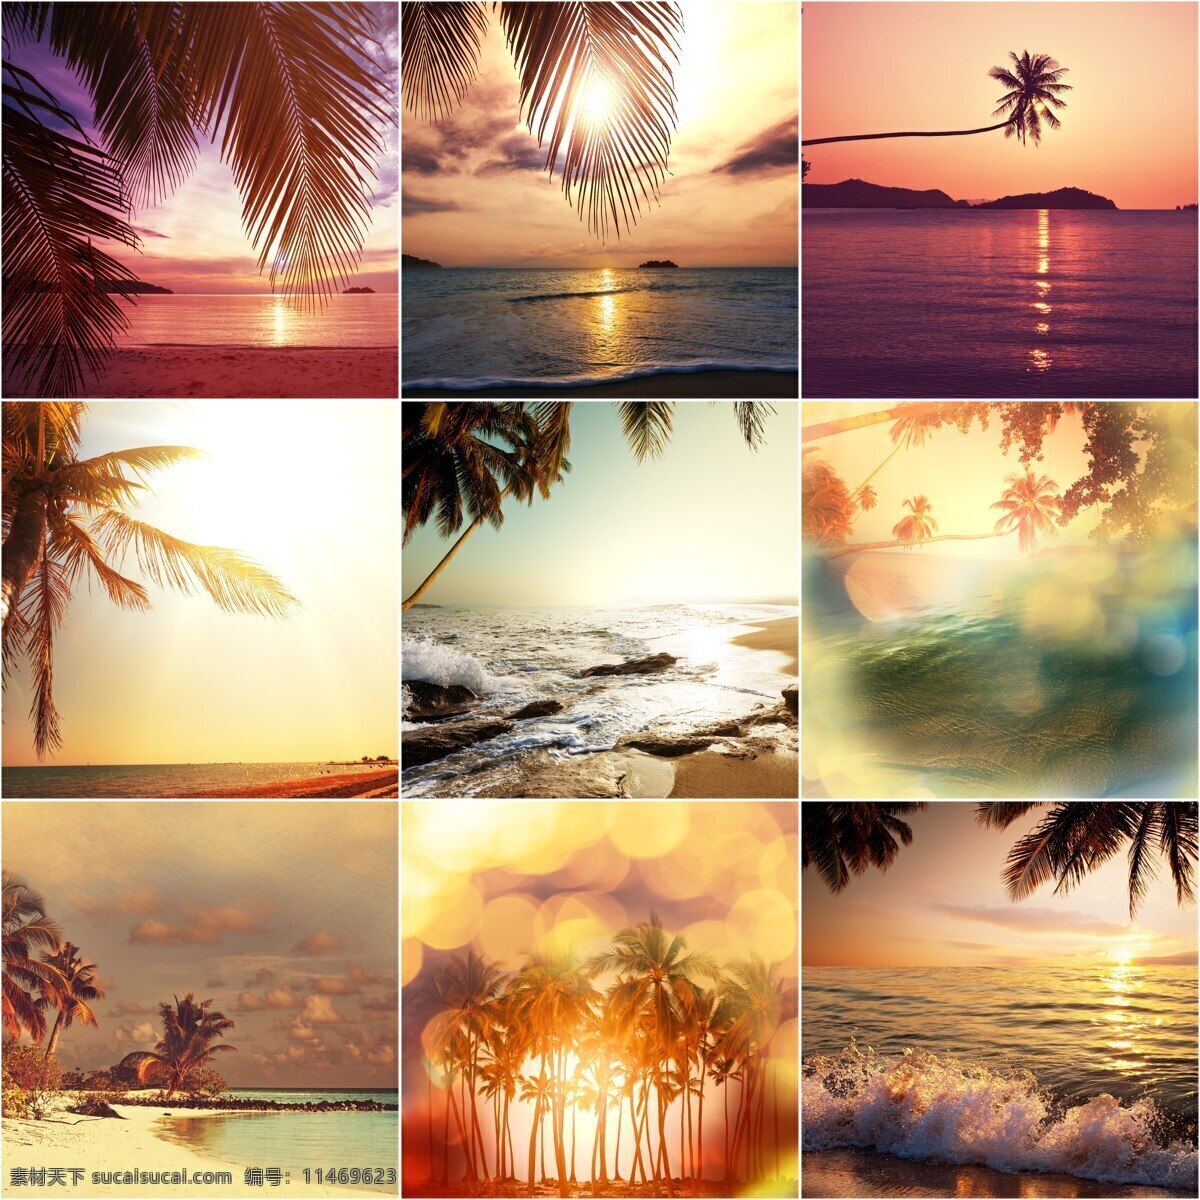 海边 美景 海滩 椰子树 海浪 风景 自然 山水风景 风景图片